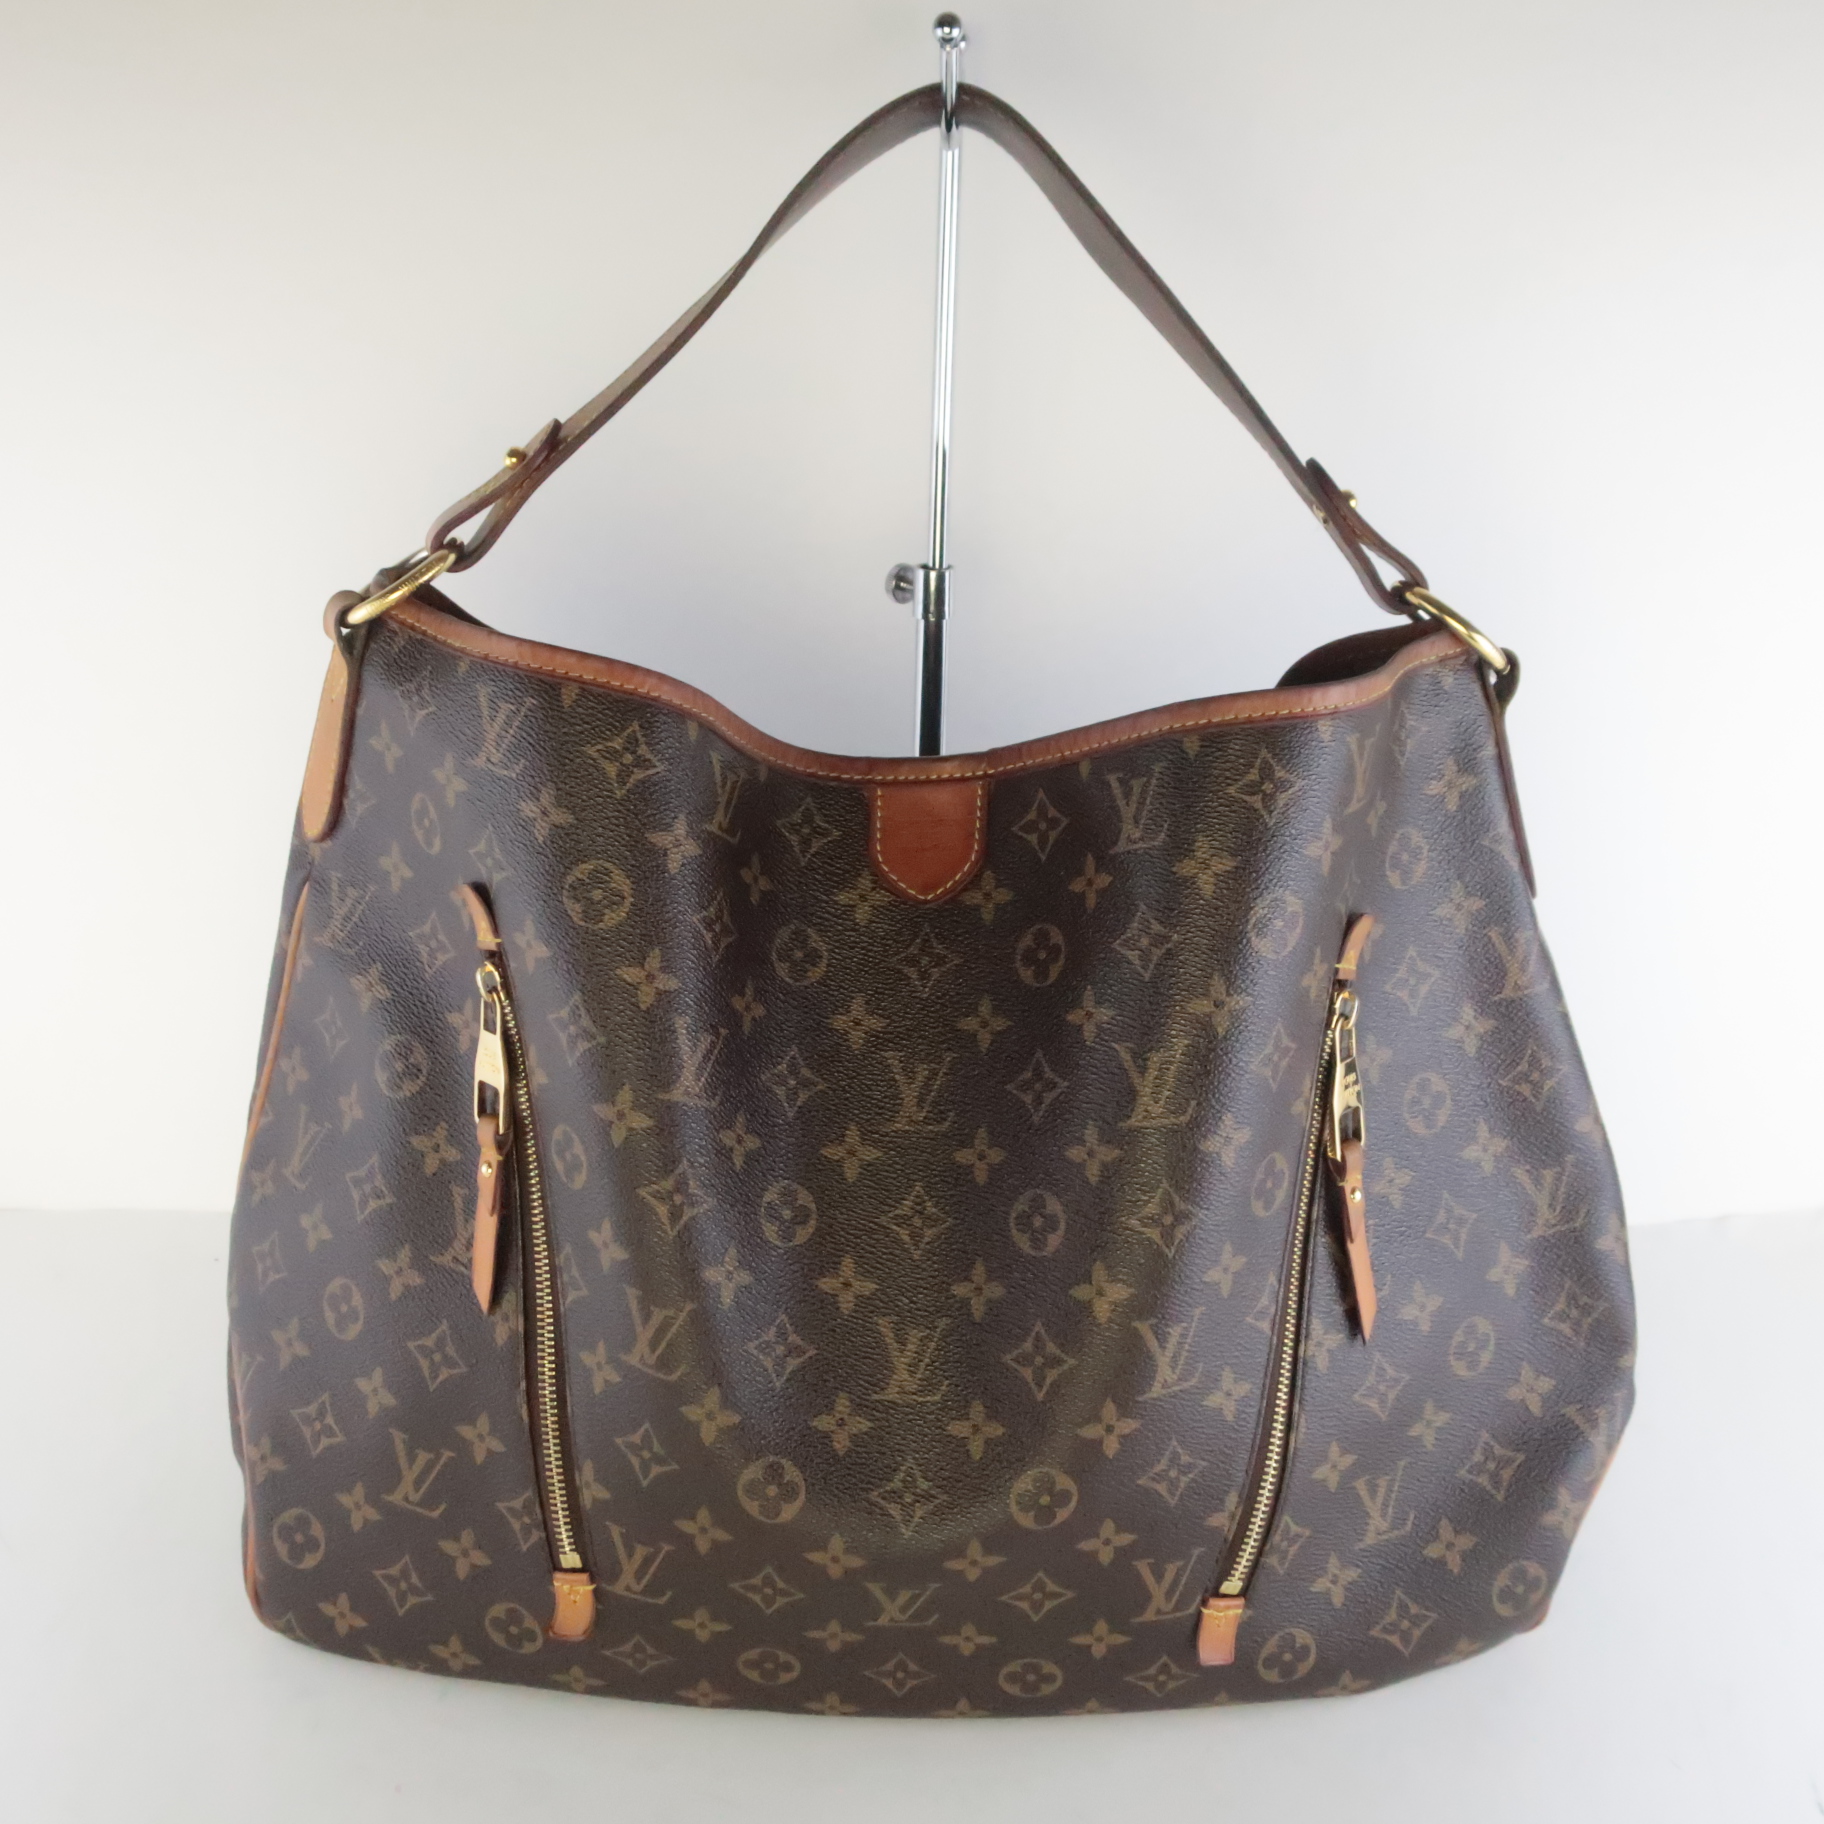 Классические сумки Louis Vuitton: ТОП-10 - как выбрать подходящую?